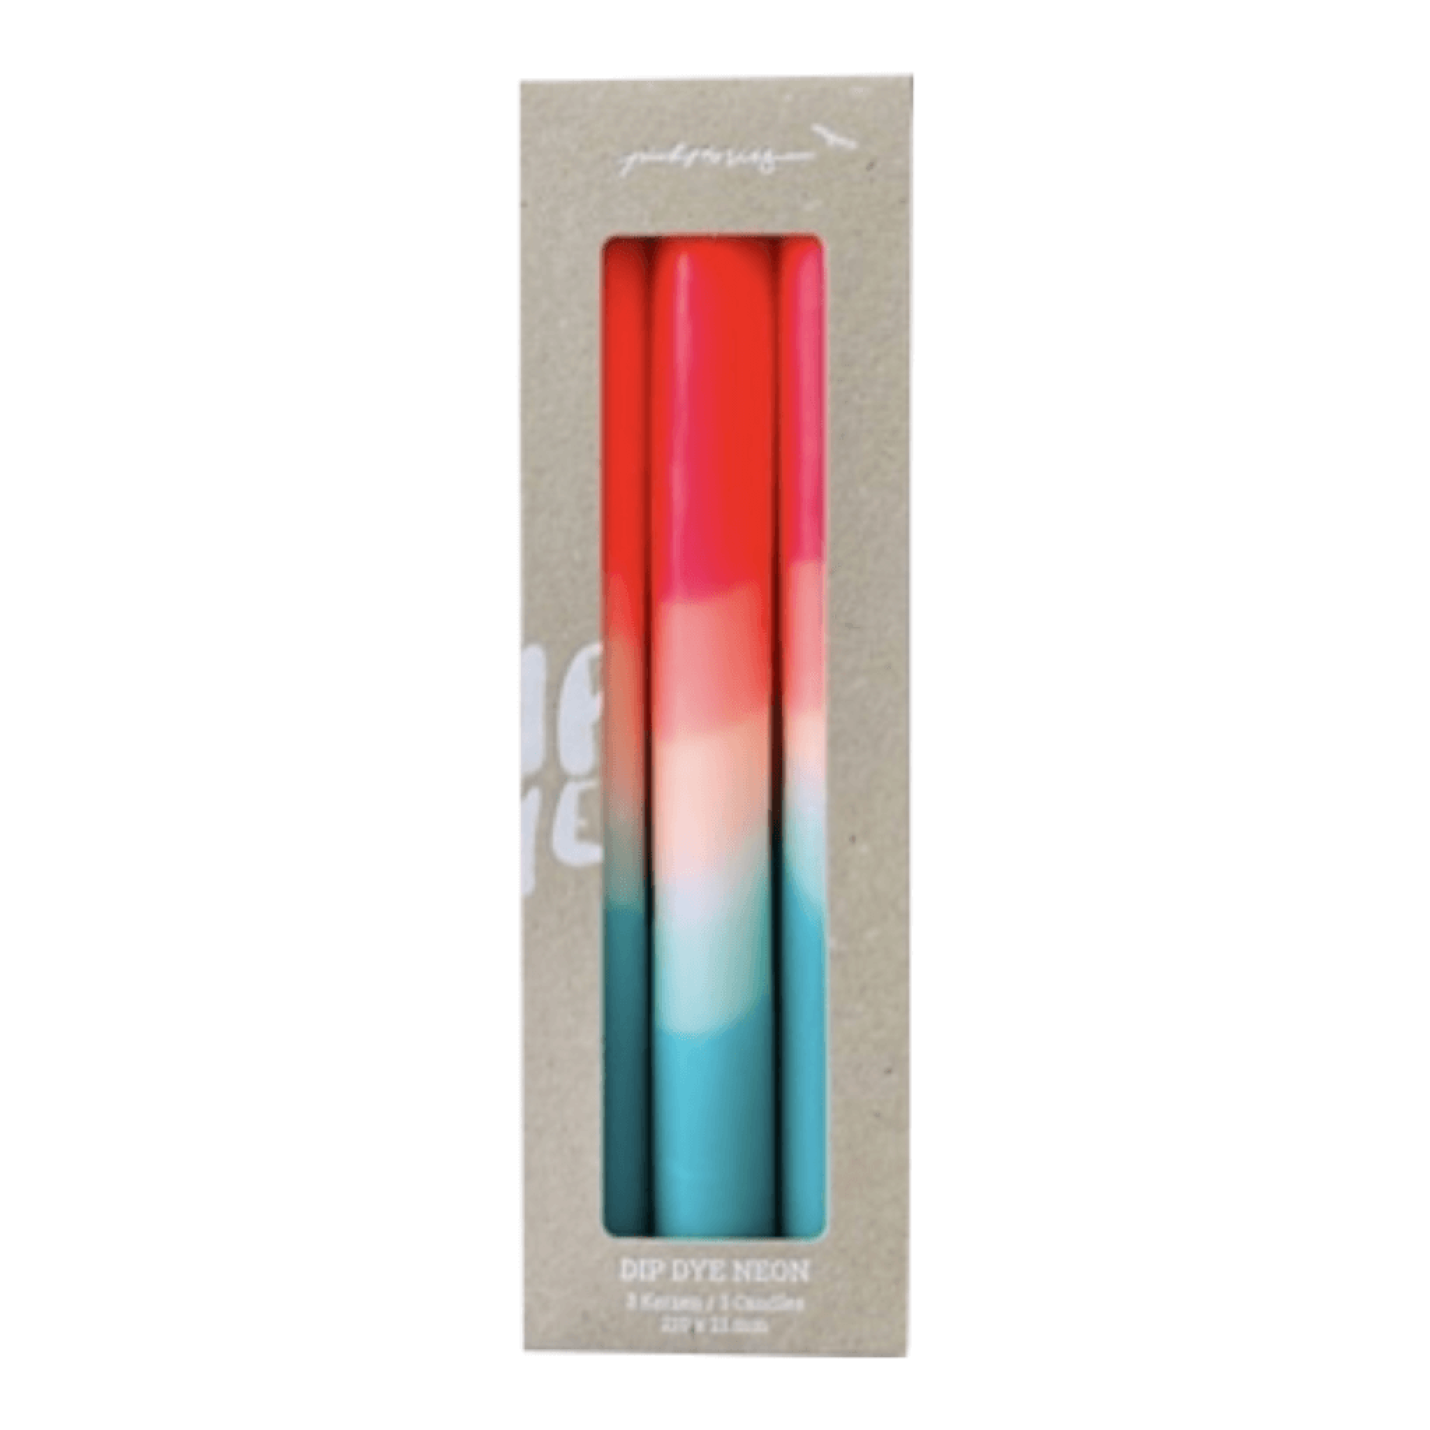 Dip Dye Neon Watermelon Coast kaarsen per 3 verpakt; Afbeelding: 2